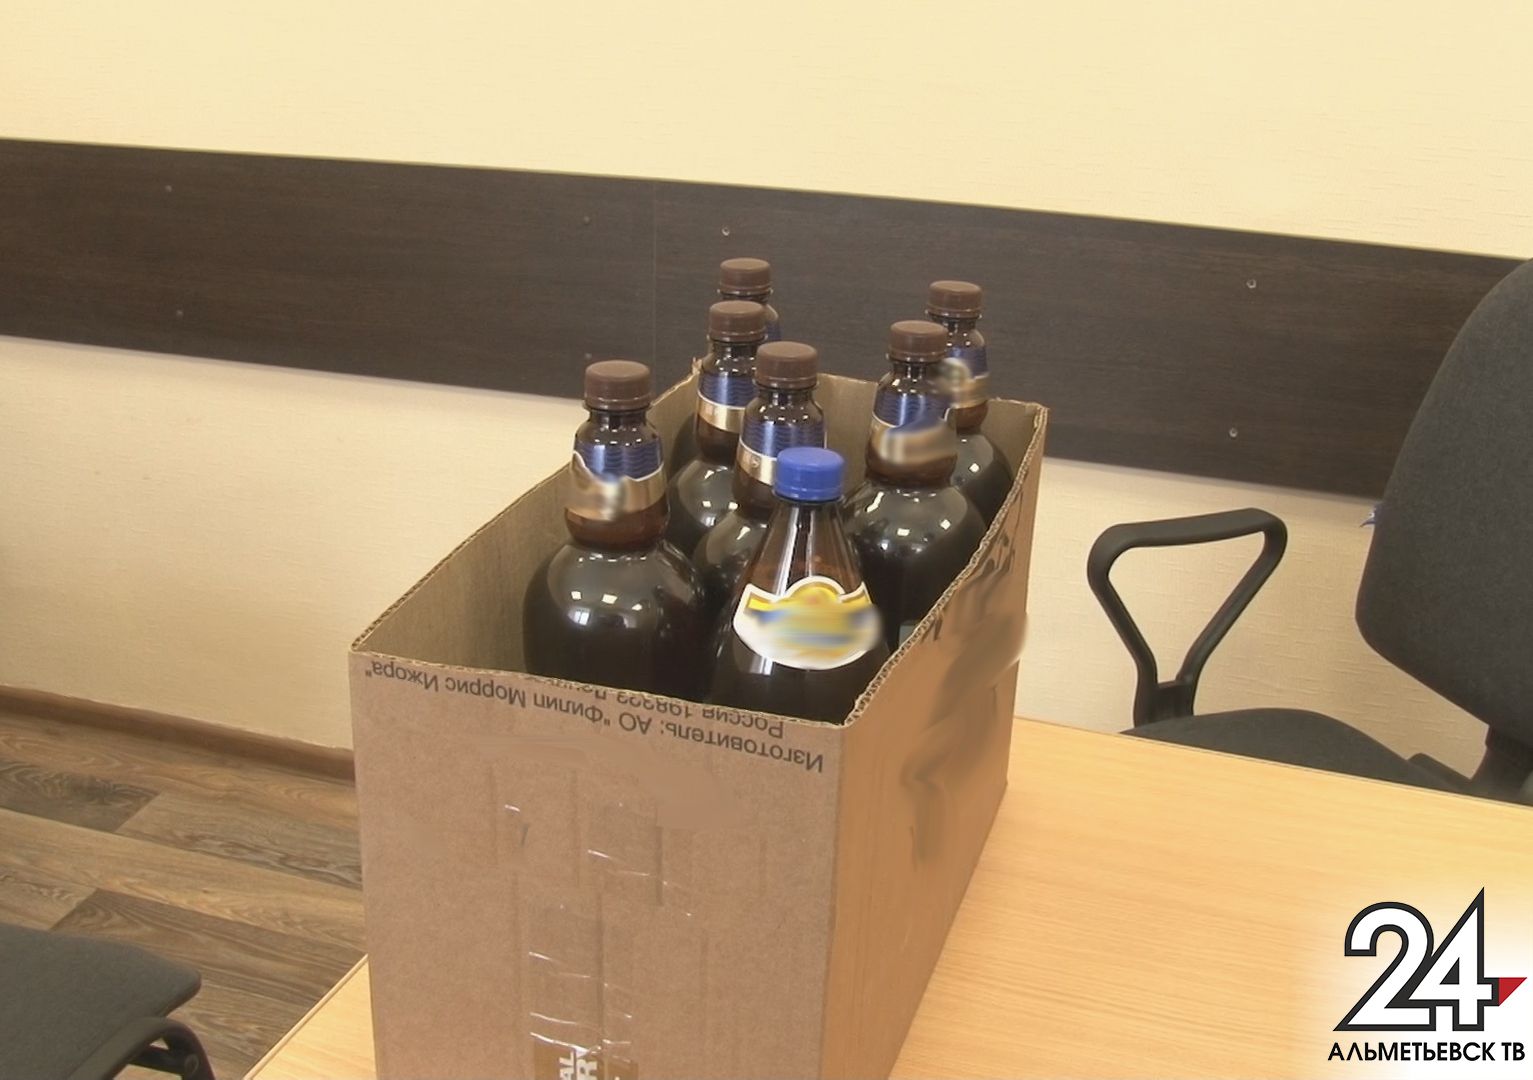 Продажу алкоголя с нарушениями обнаружили в Альметьевске сотрудники Госалкогольинспекции